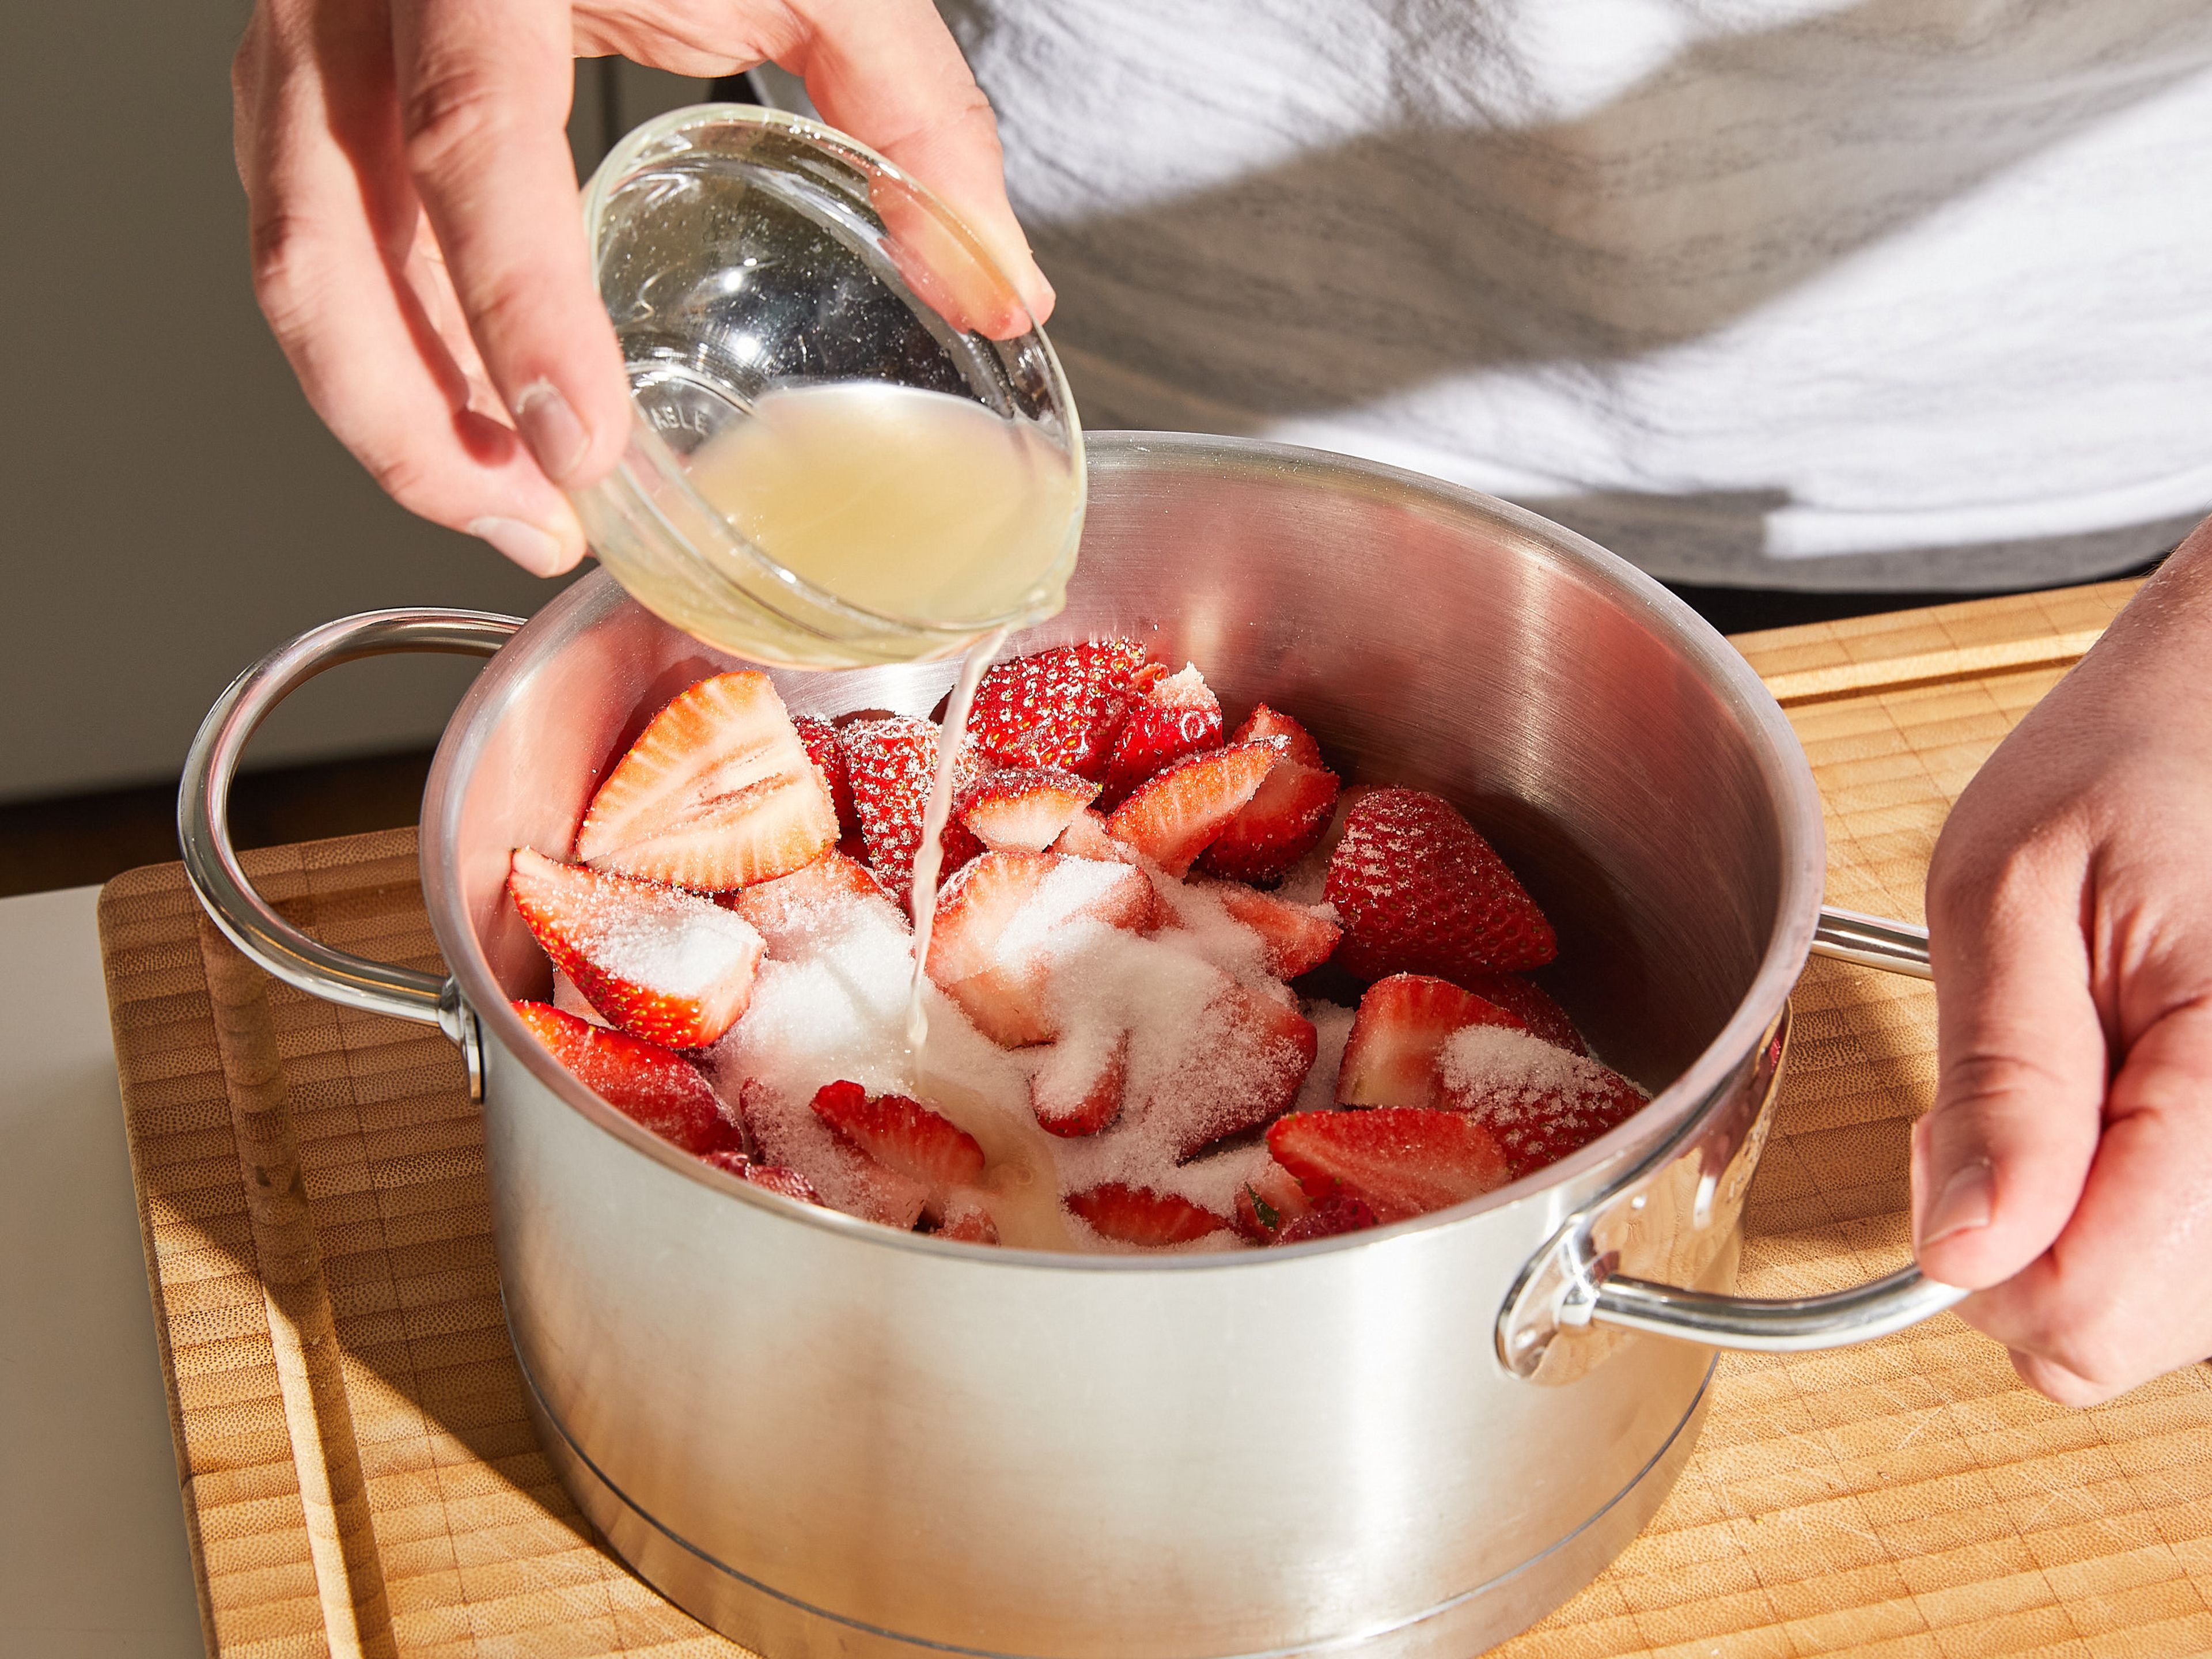 Erdbeeren vom Strunk befreien und vierteln, dabei einige ganze Erdbeeren zum Servieren aufbewahren. Die Erdbeeren in einen Topf geben und mit Zucker und Zitronensaft vermischen. Anschließend beiseite stellen.